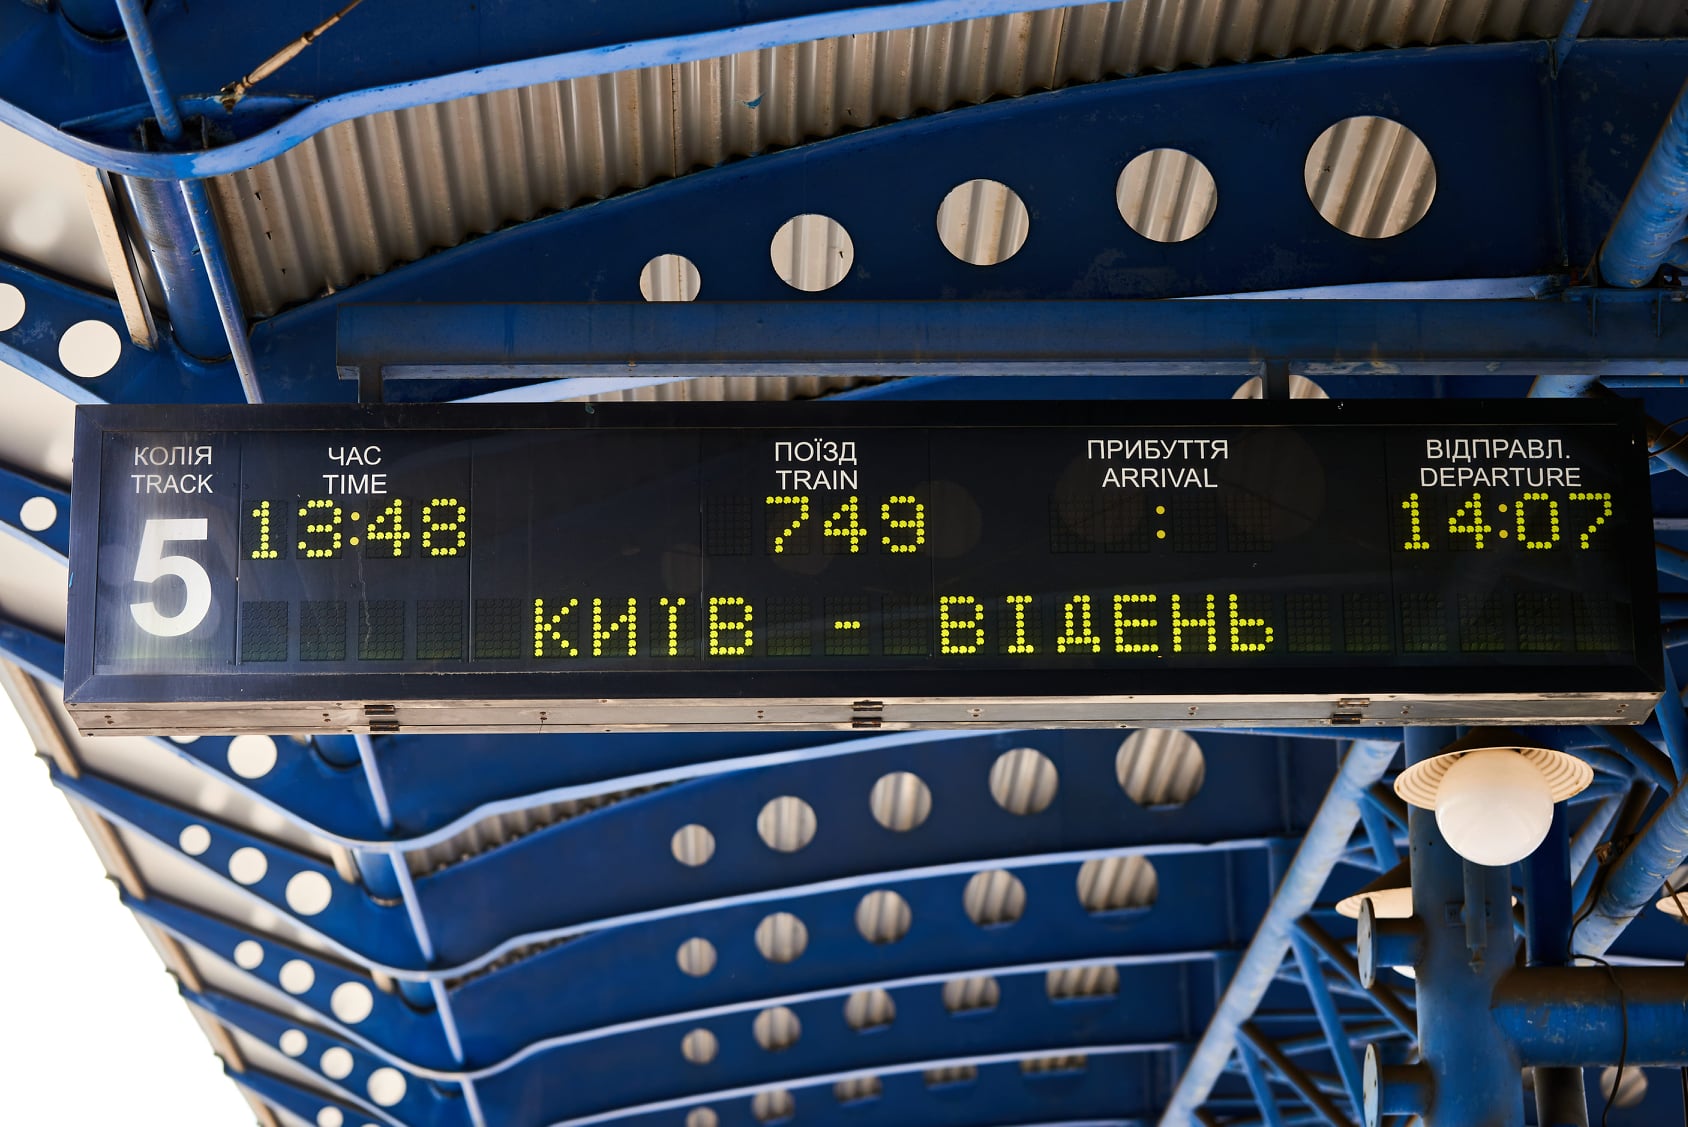 С 1 июня начал курсировать ежедневный поезд Киев - Вена через Будапешт